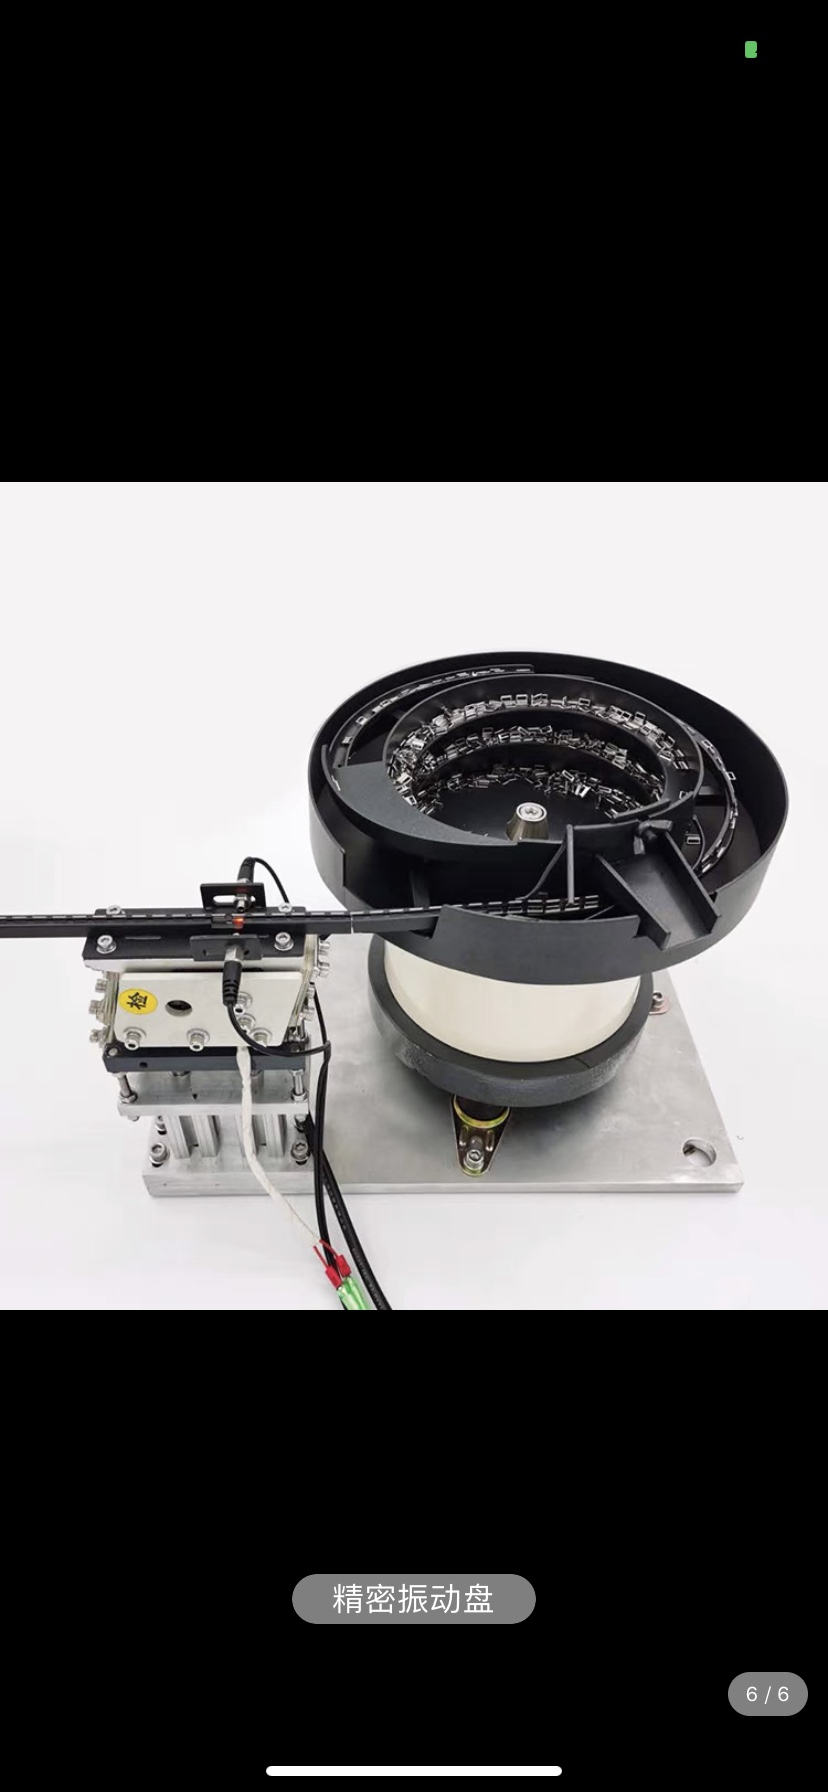 苏州振动盘厂家螺母铆钉弹簧螺丝自动送料机控制器筛选排序新 促销